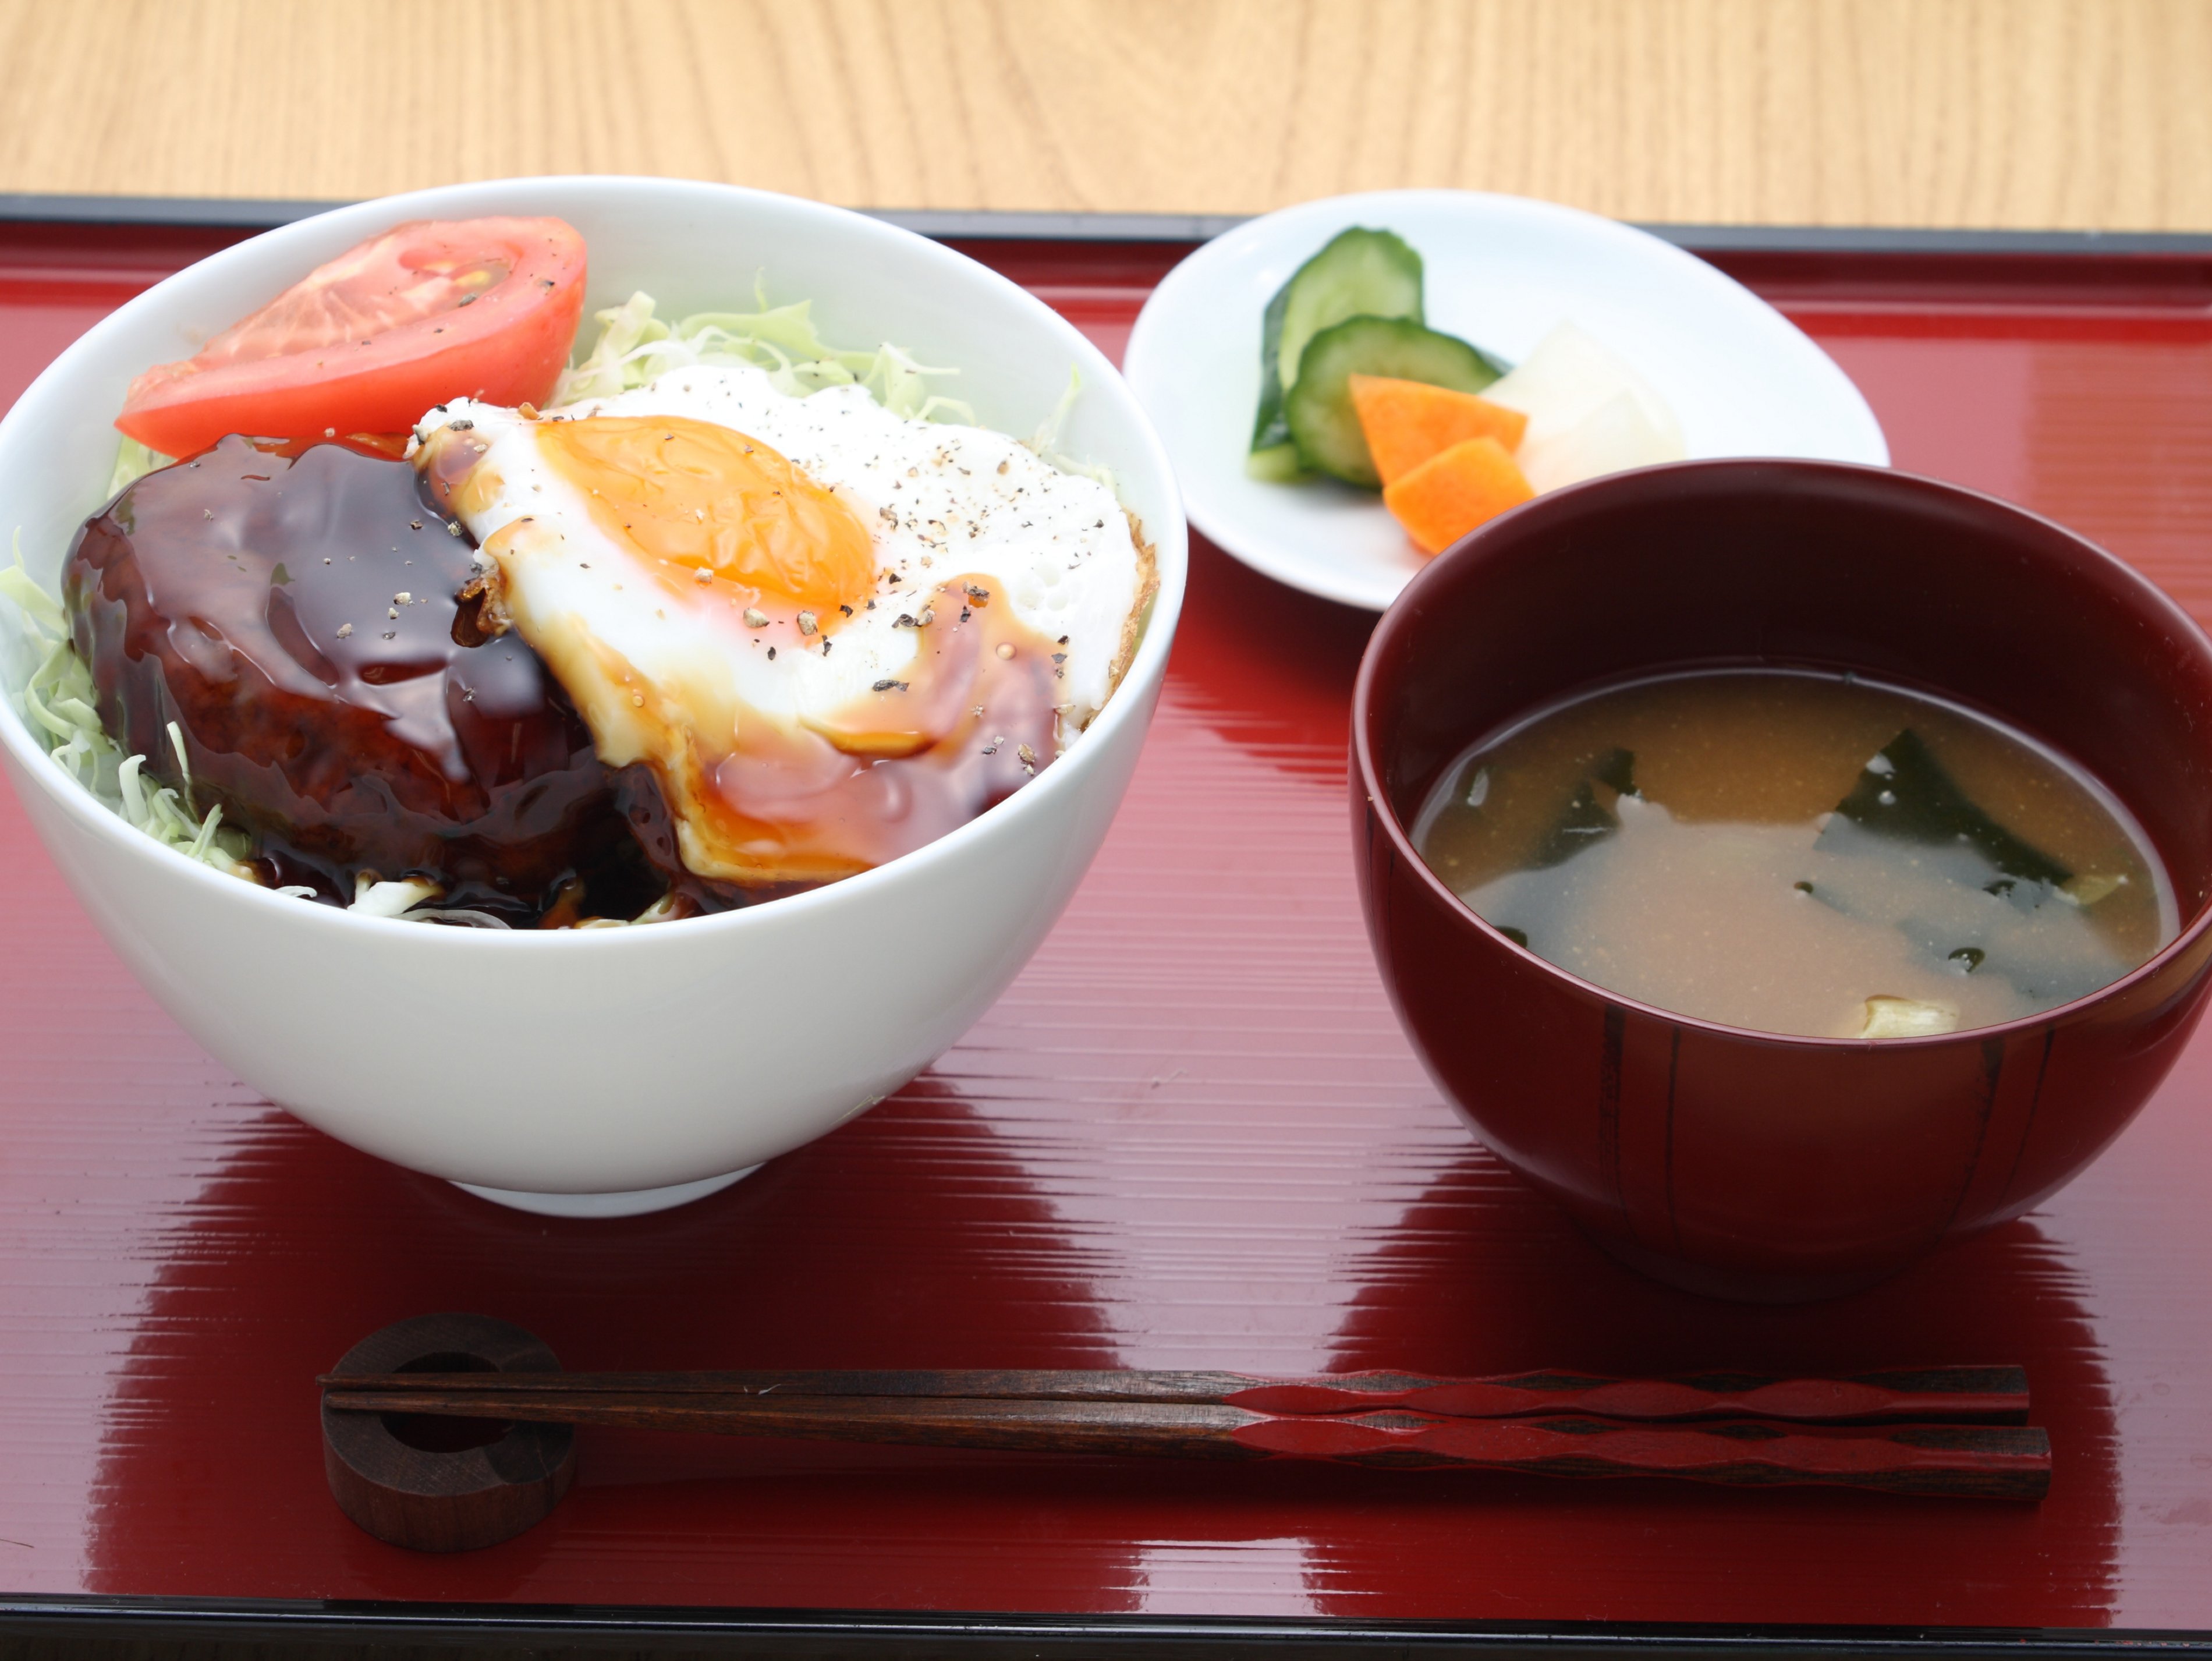 ロコモコ丼定食のレシピ 作り方 レシピ ミツカン業務用商品 メニューサイト